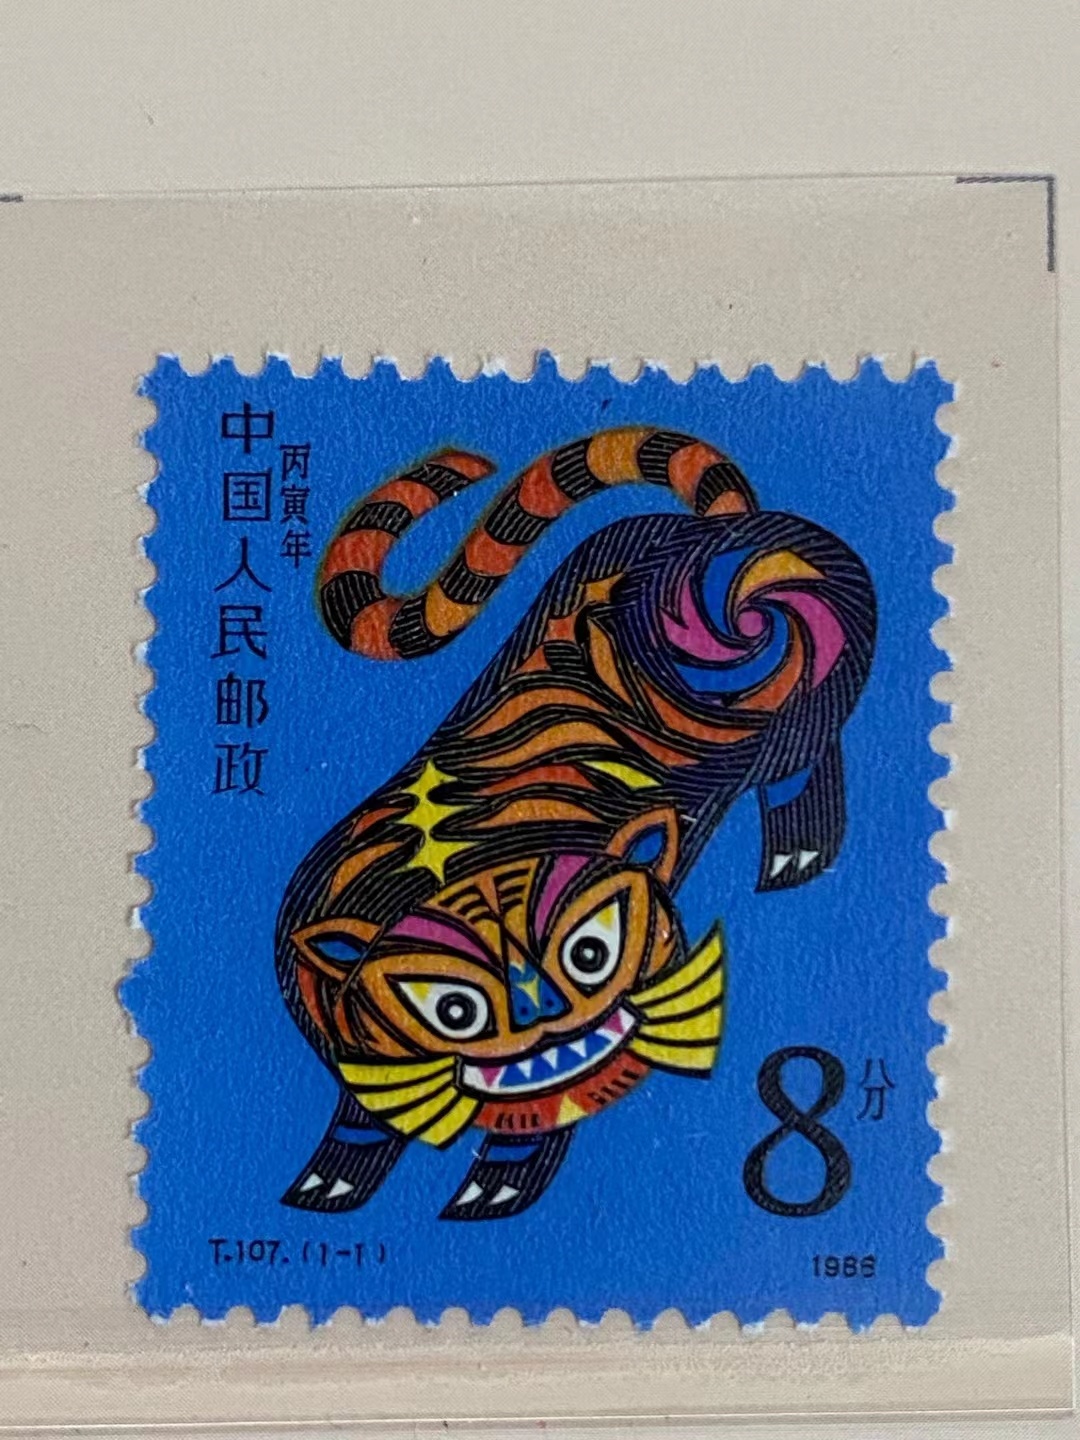 哈哈哈哈哈哈今年邮票上的老虎